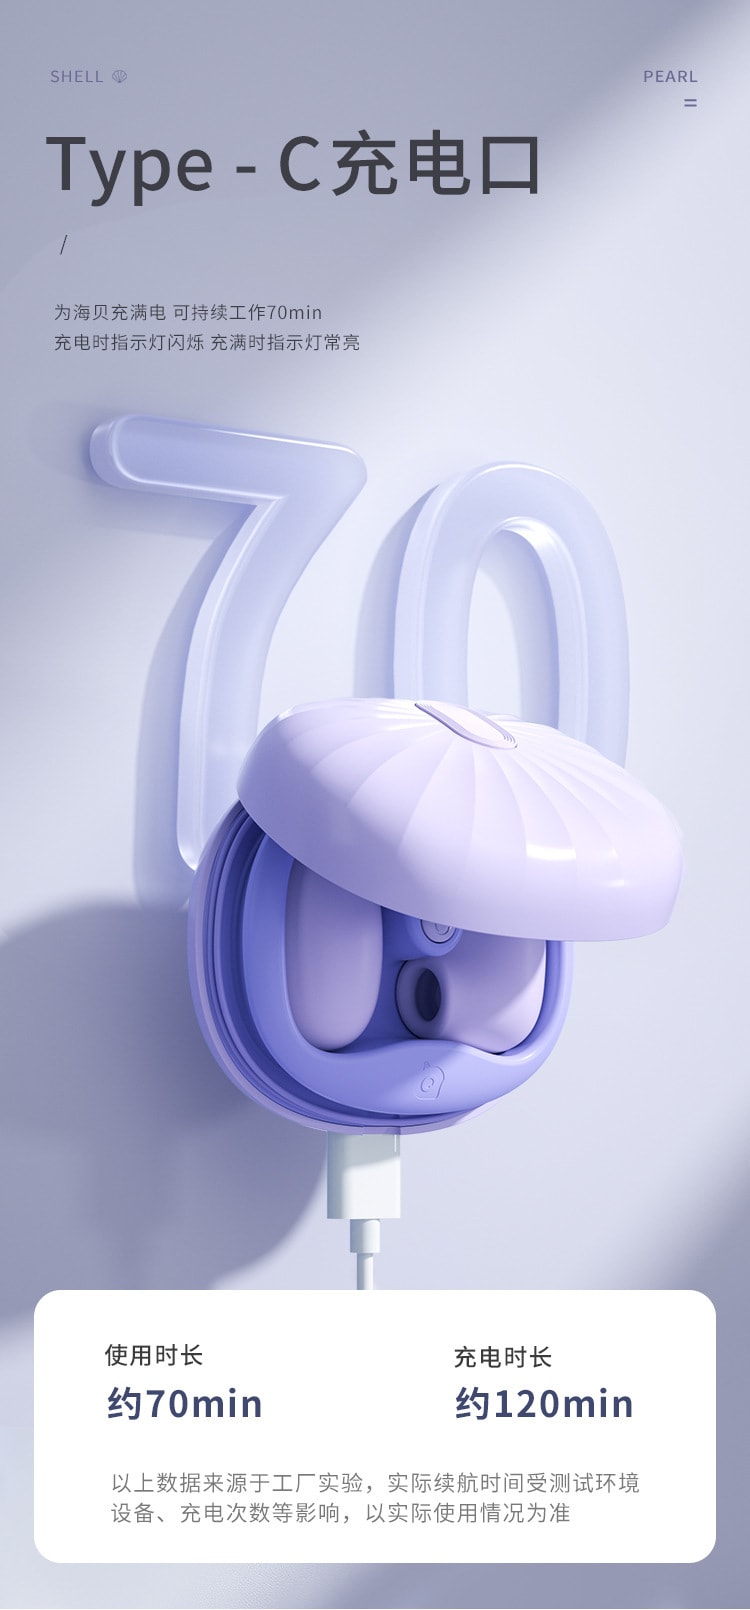 【情侶必備好物】中國 謎姬 海貝跳蛋外吸內震 軟糯矽膠低噪 成人玩具 - 紫色